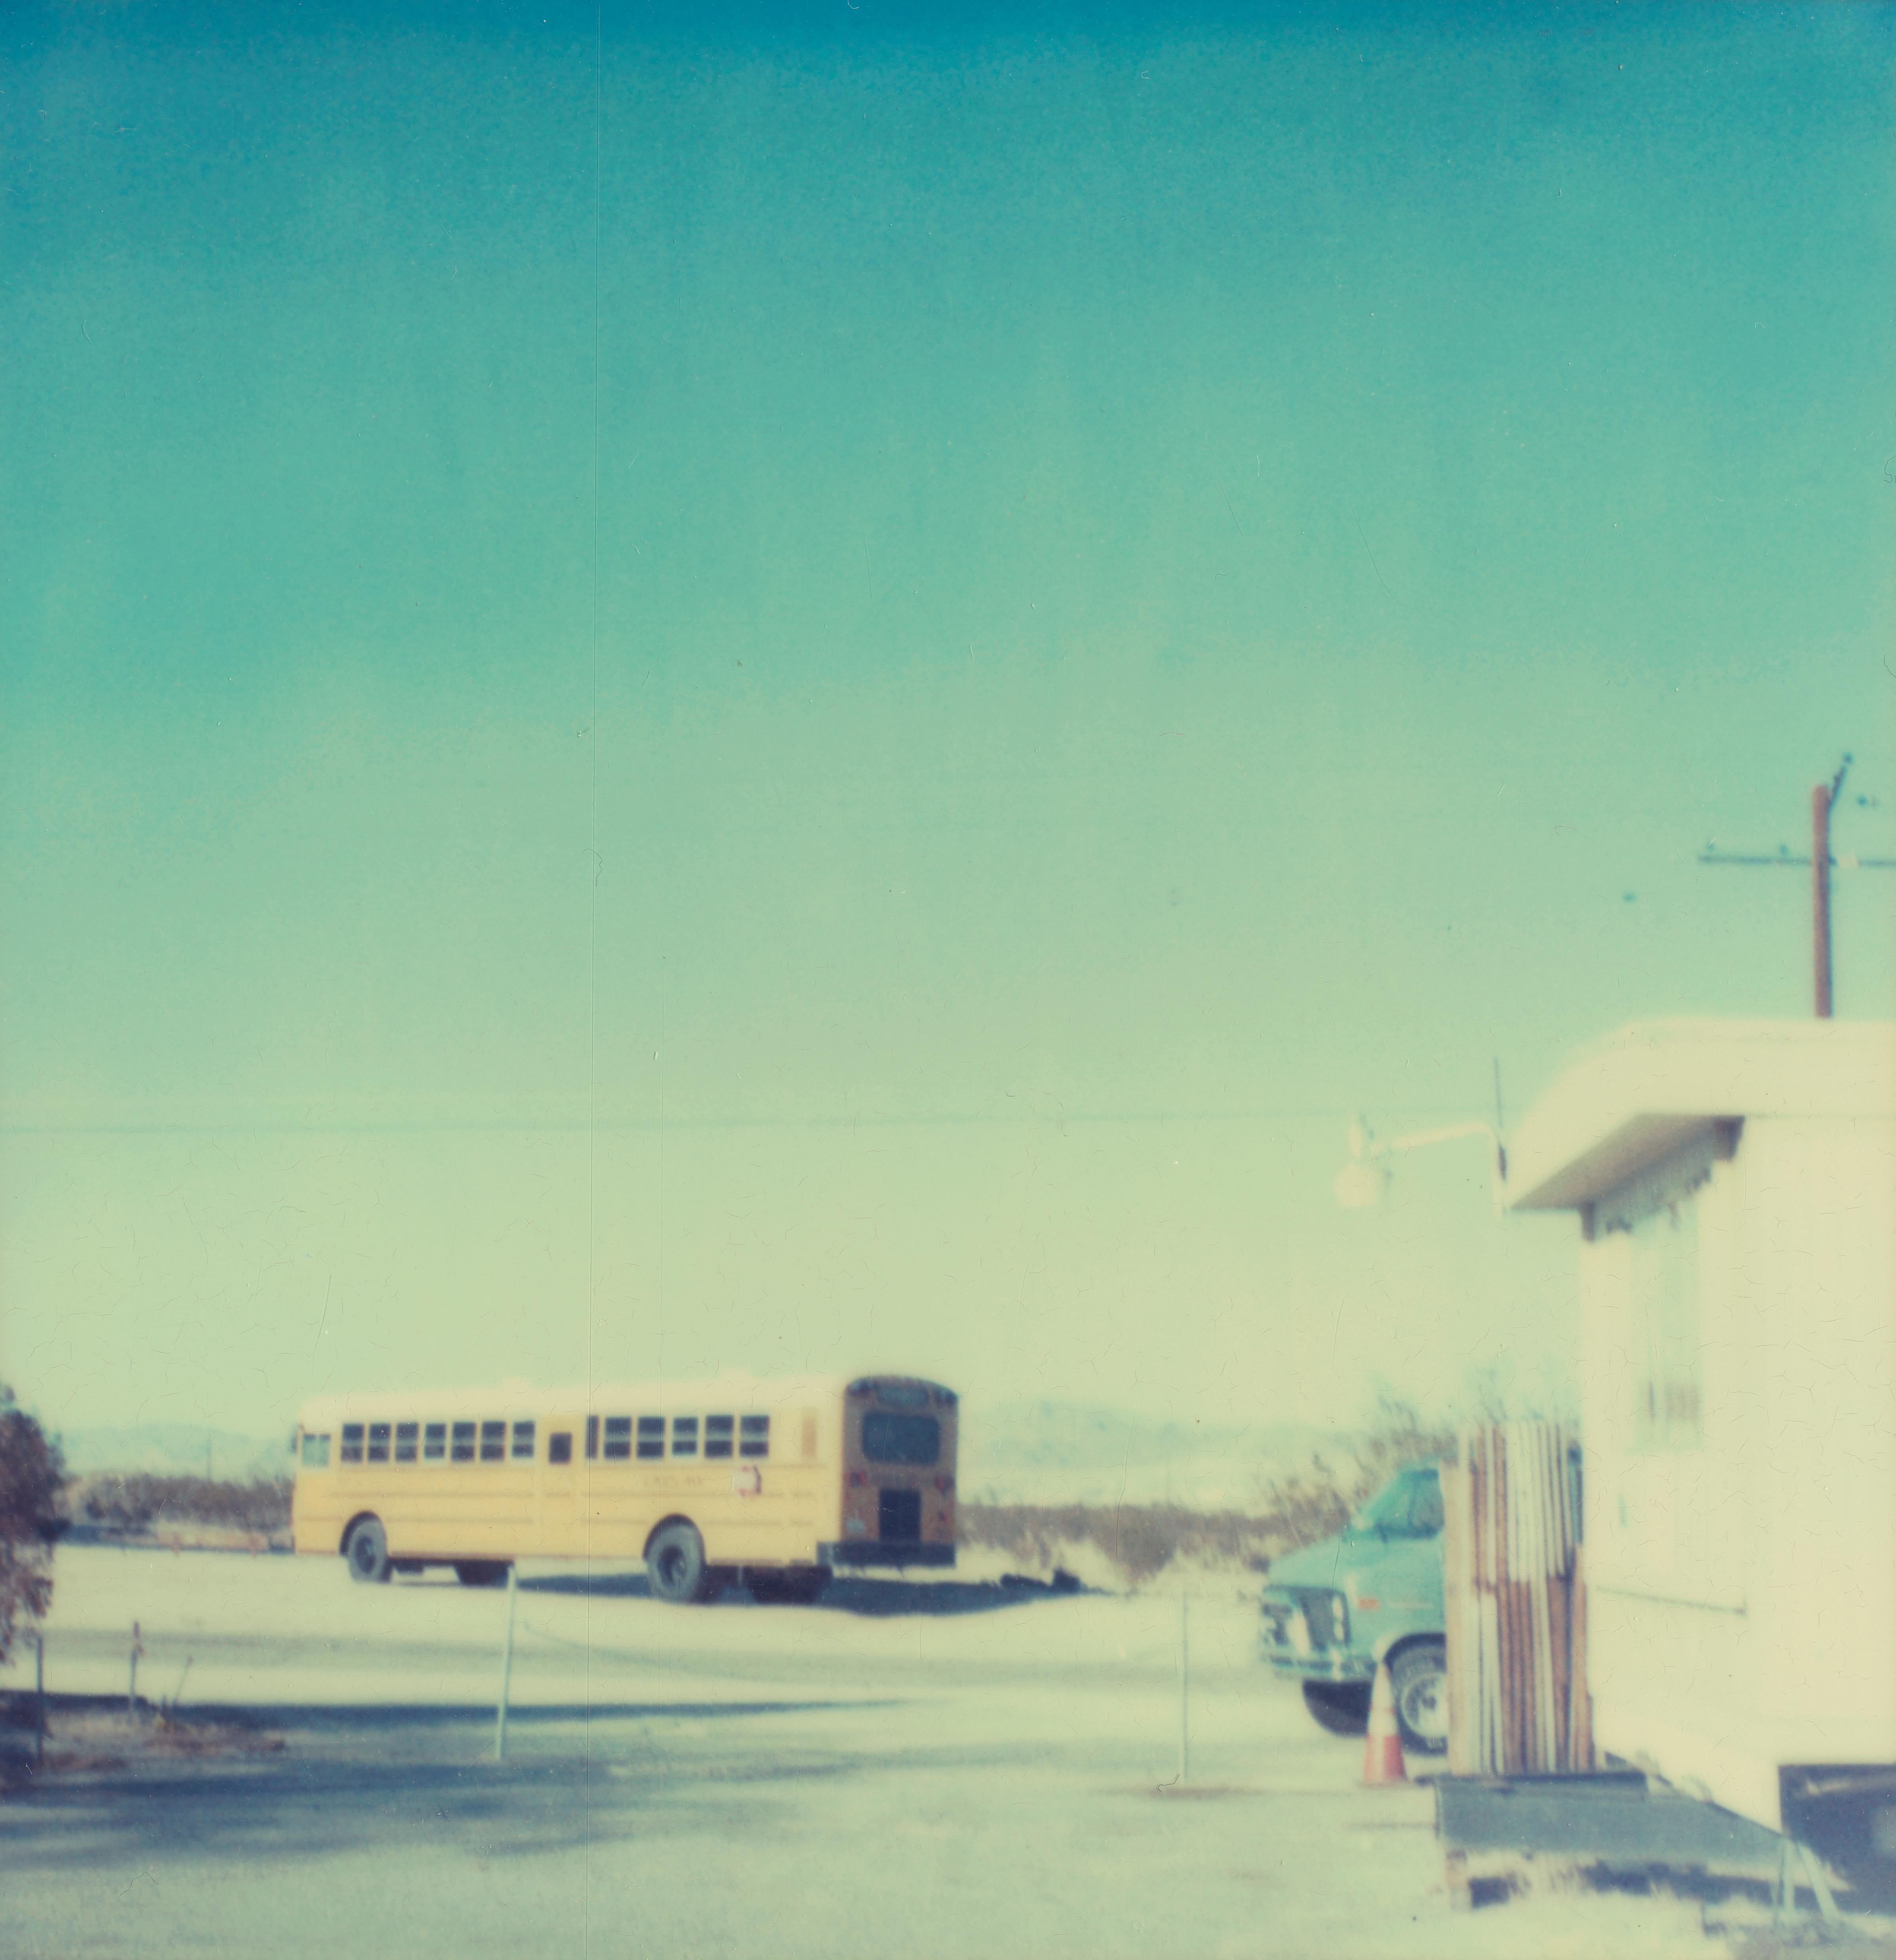 Stefanie Schneider Landscape Photograph - Drop Off (29 Palms, CA) - 21st Century, Polaroid, Contemporary, Landscape